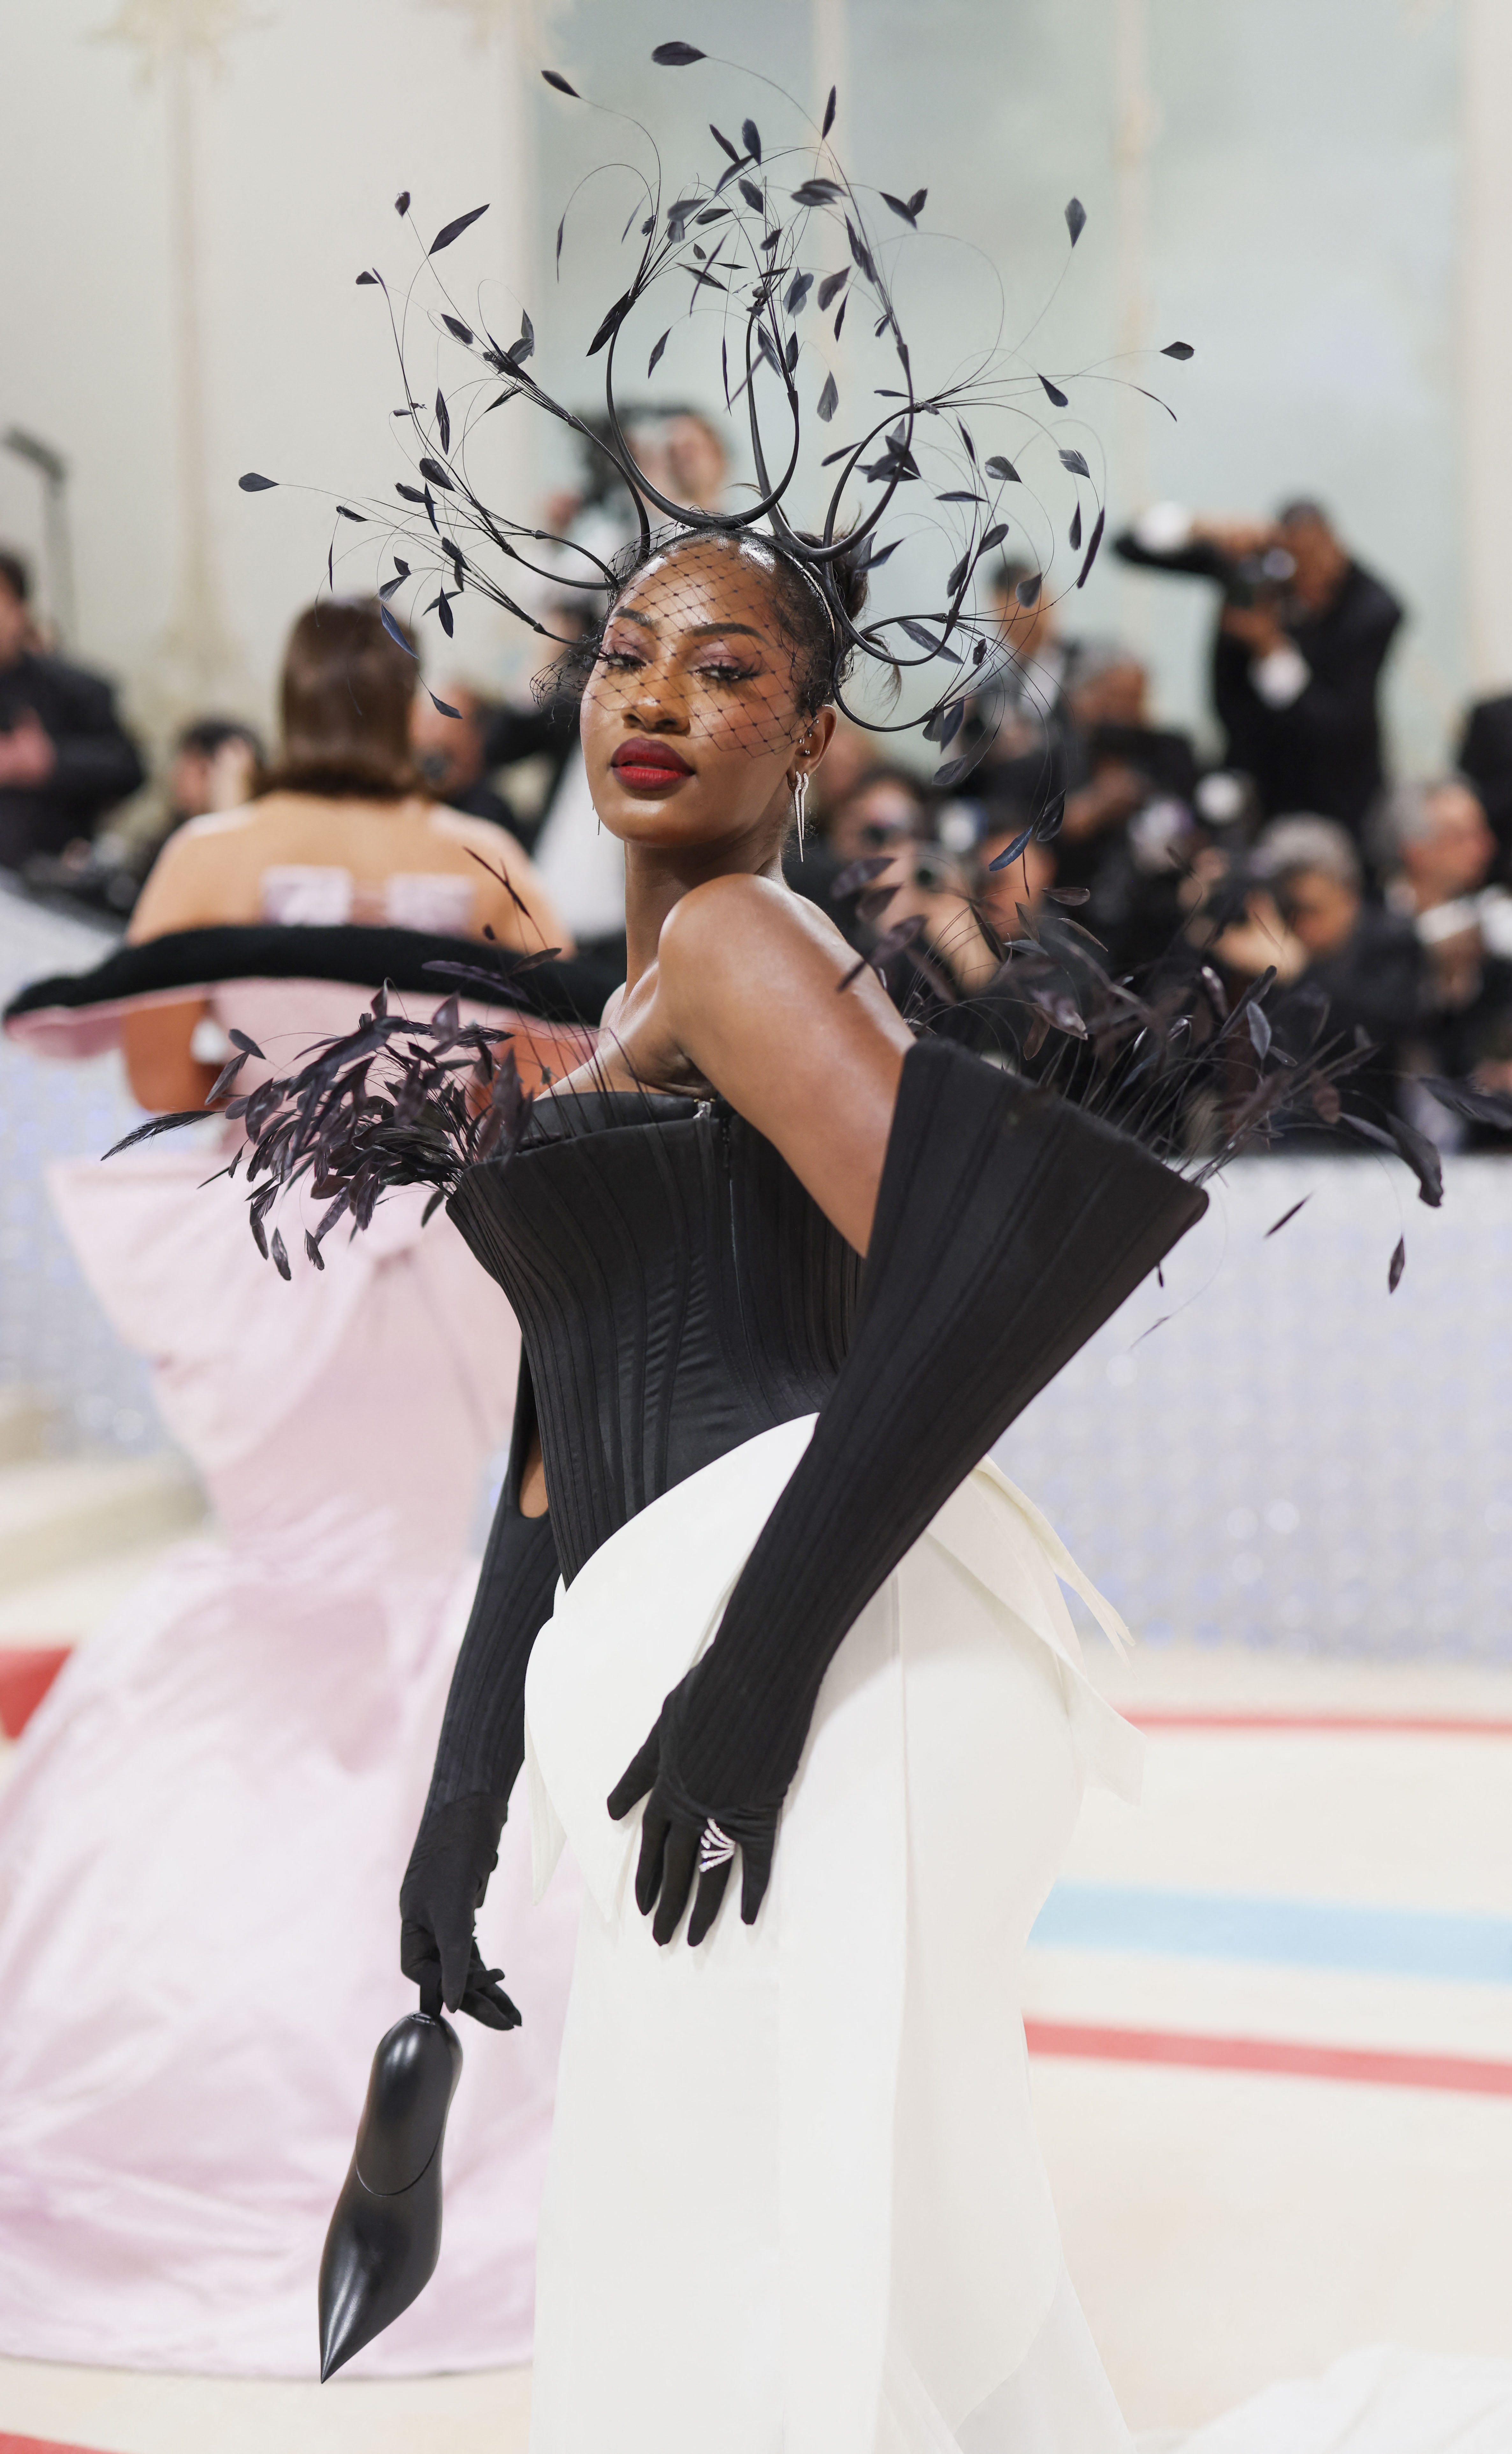 La cantante Temilade Openiyi, conocida artísticamente como Tems, se mantuvo en el blanco y negro que dominó la gala y lo acompañó con un particular adorno en la parte superior /REUTERS/Andrew Kelly